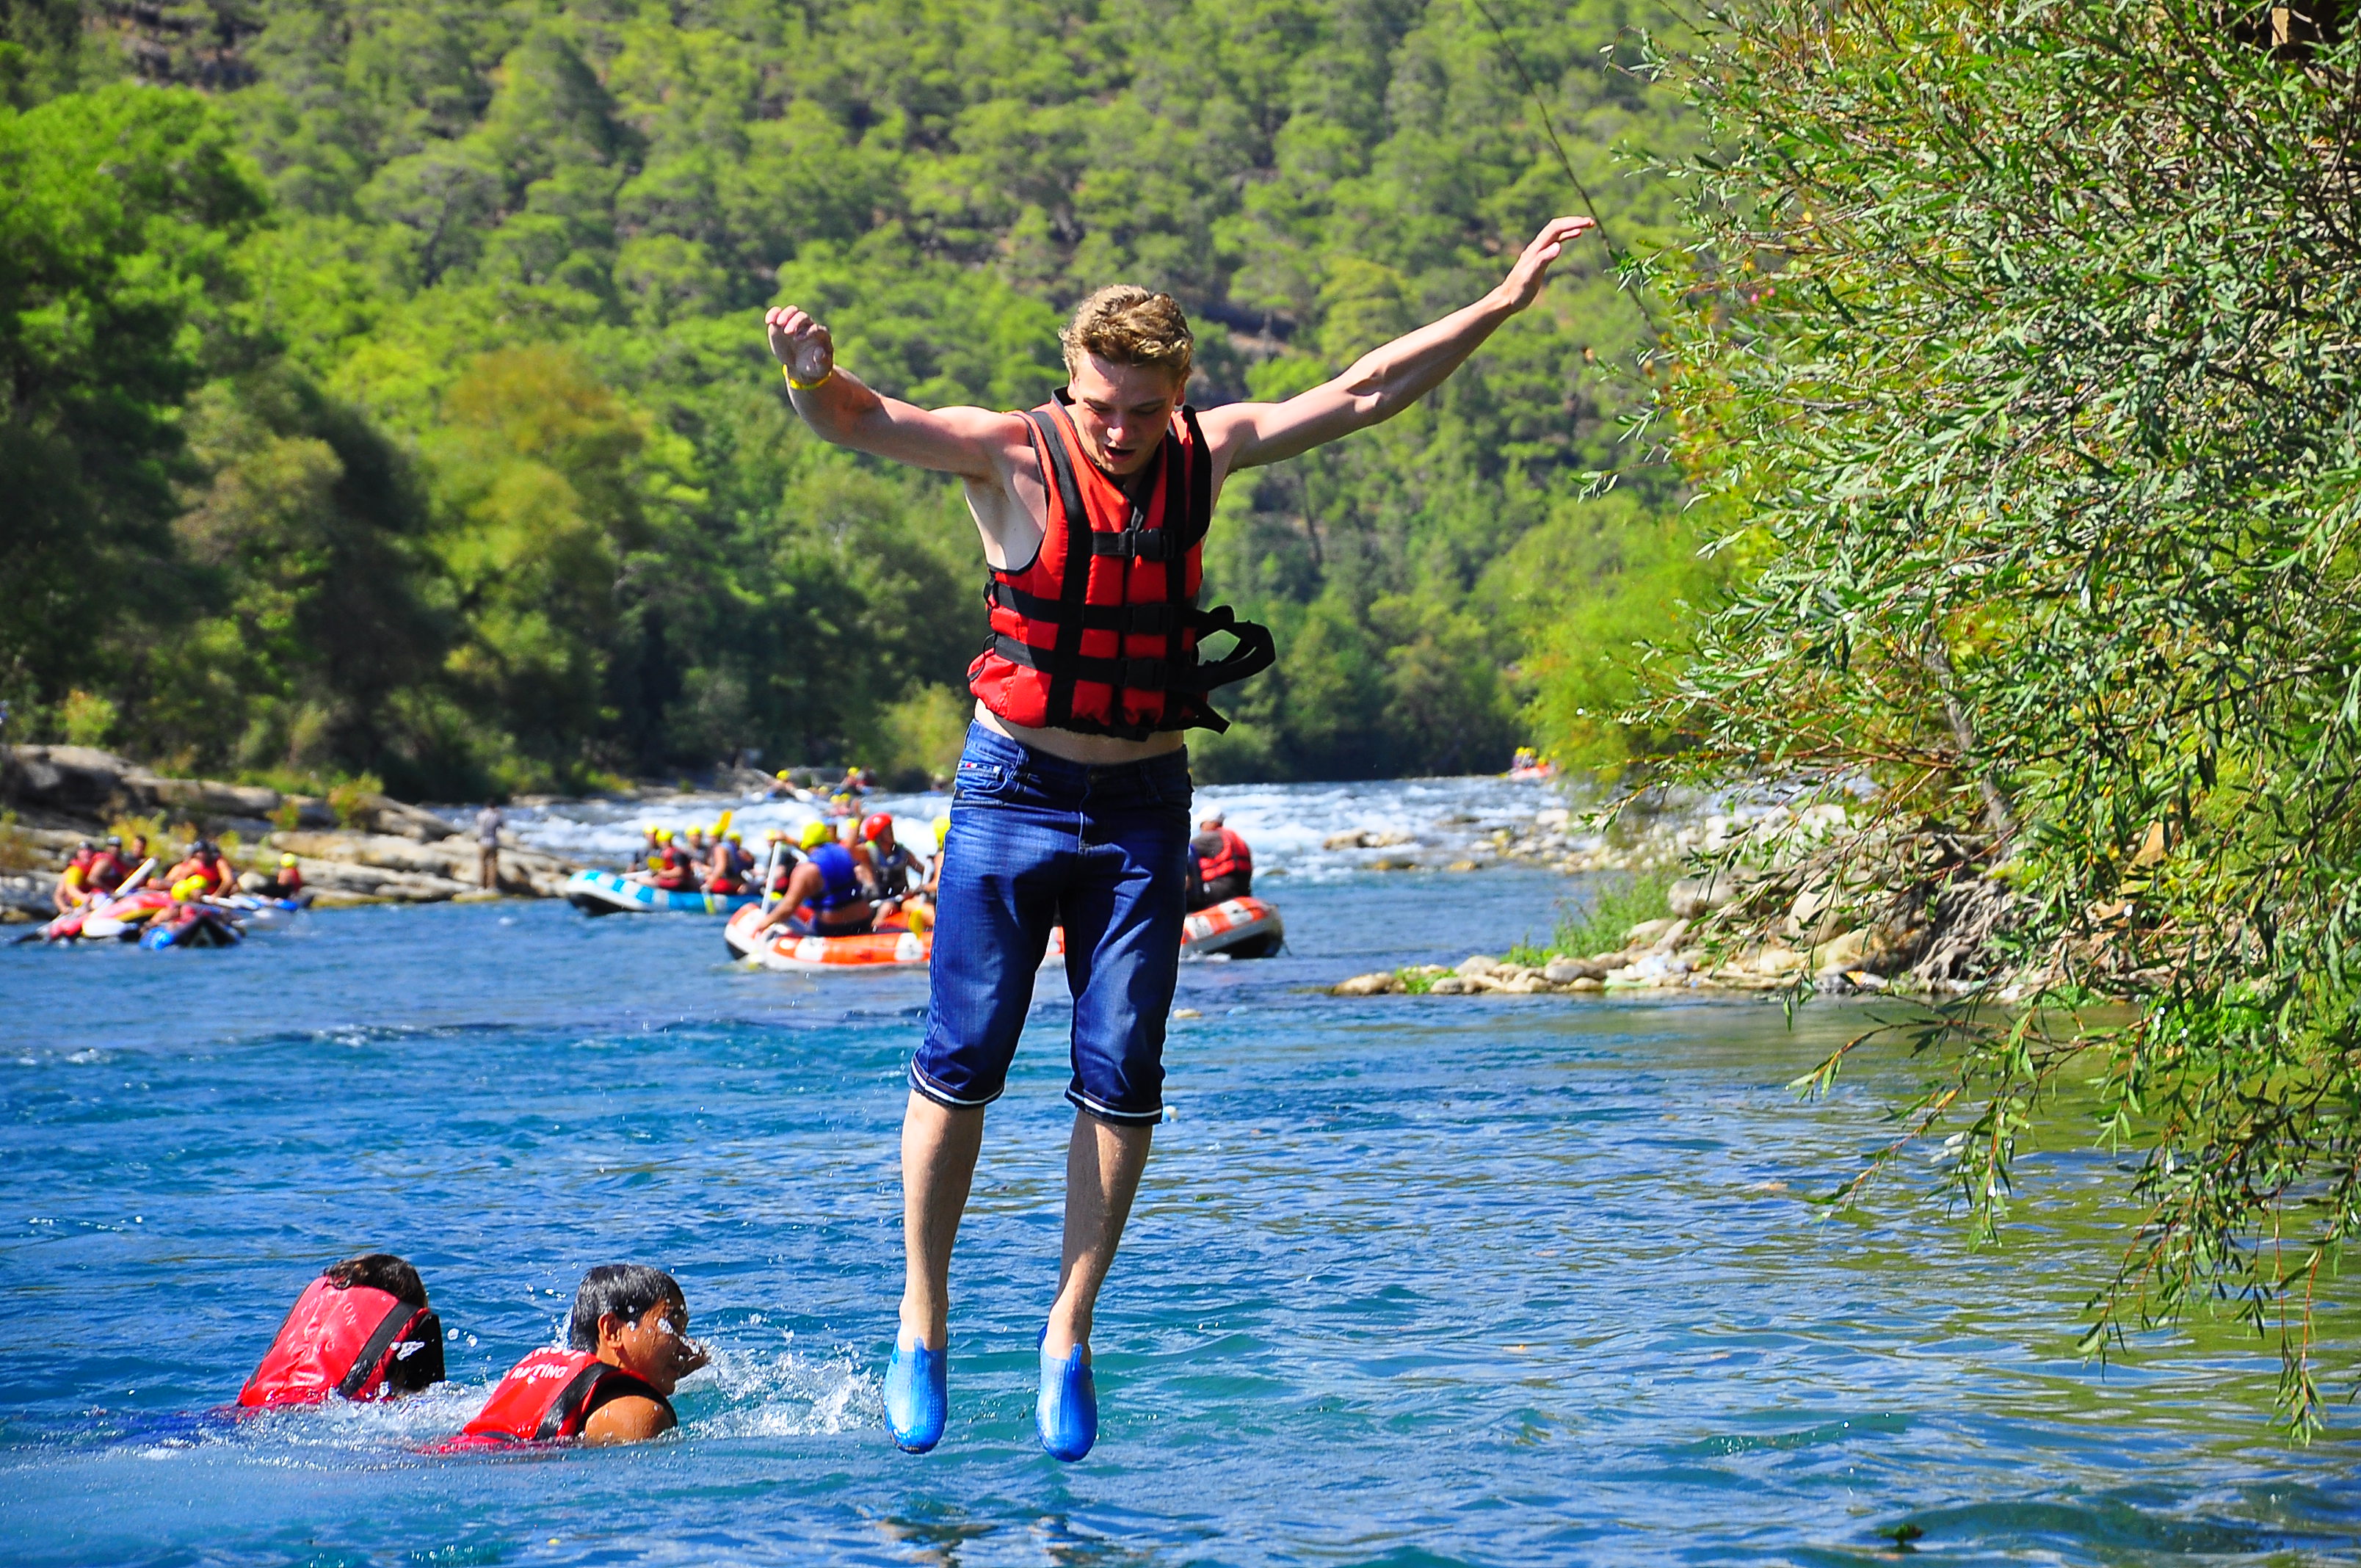 Antalya koprulu canyon rafting tour